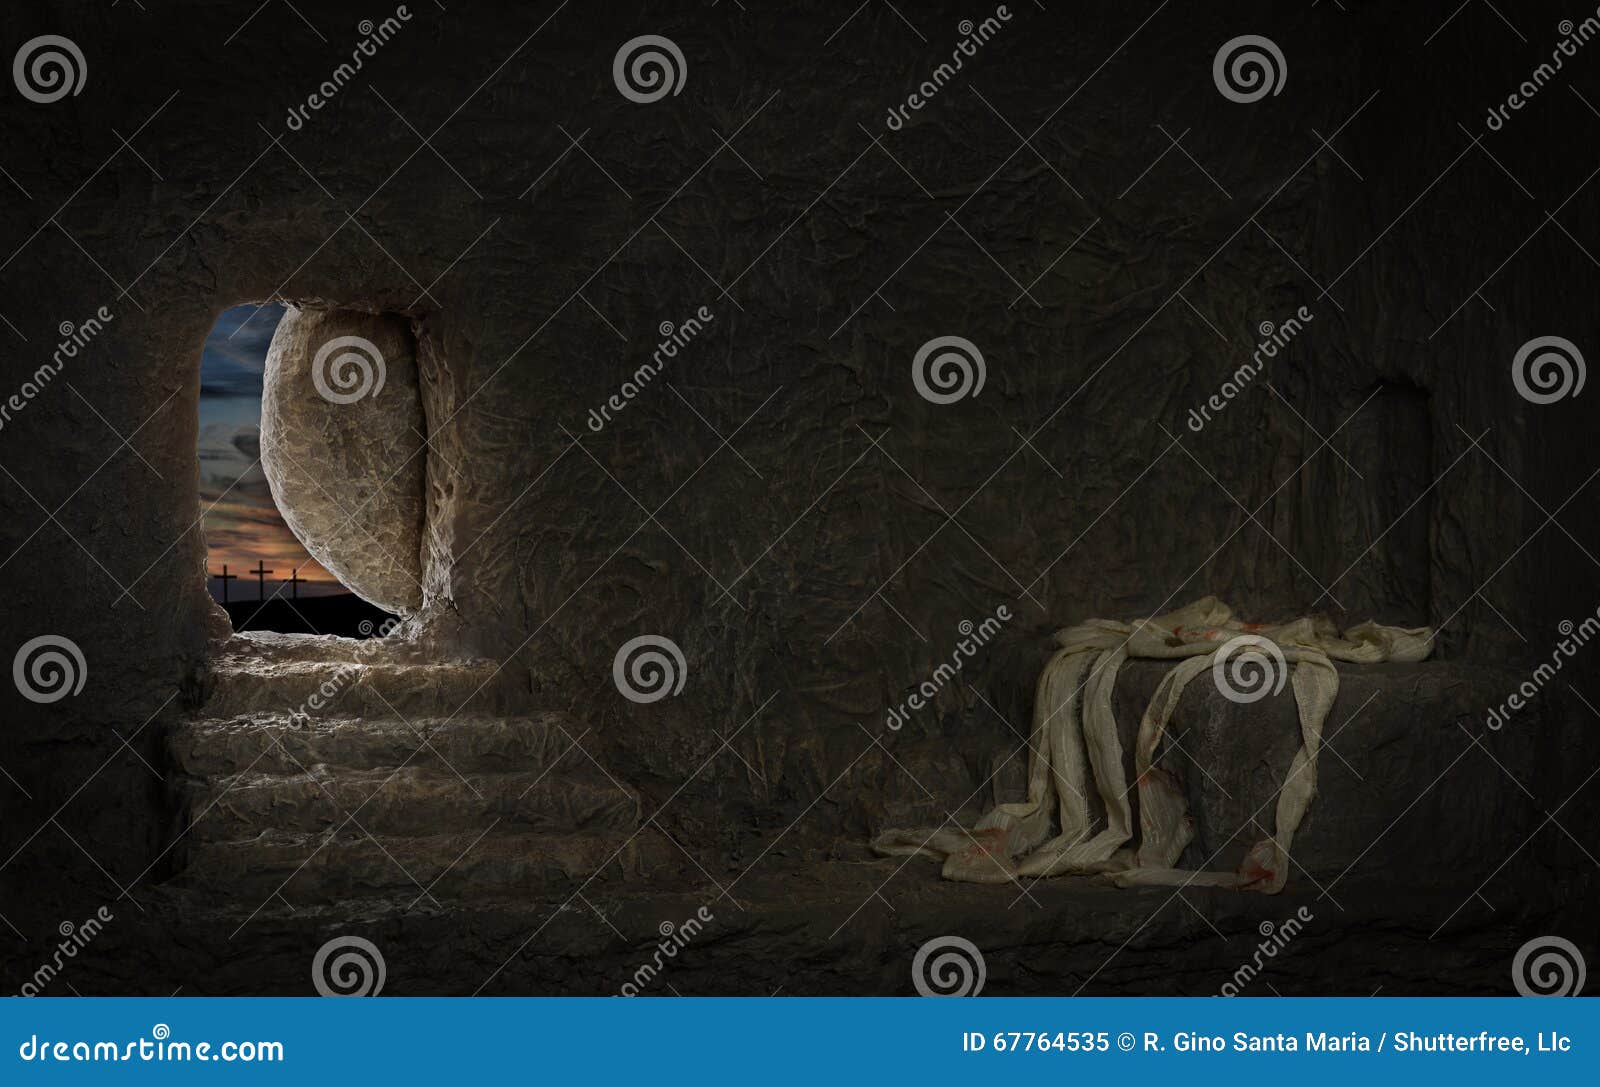 empty tomb of jesus